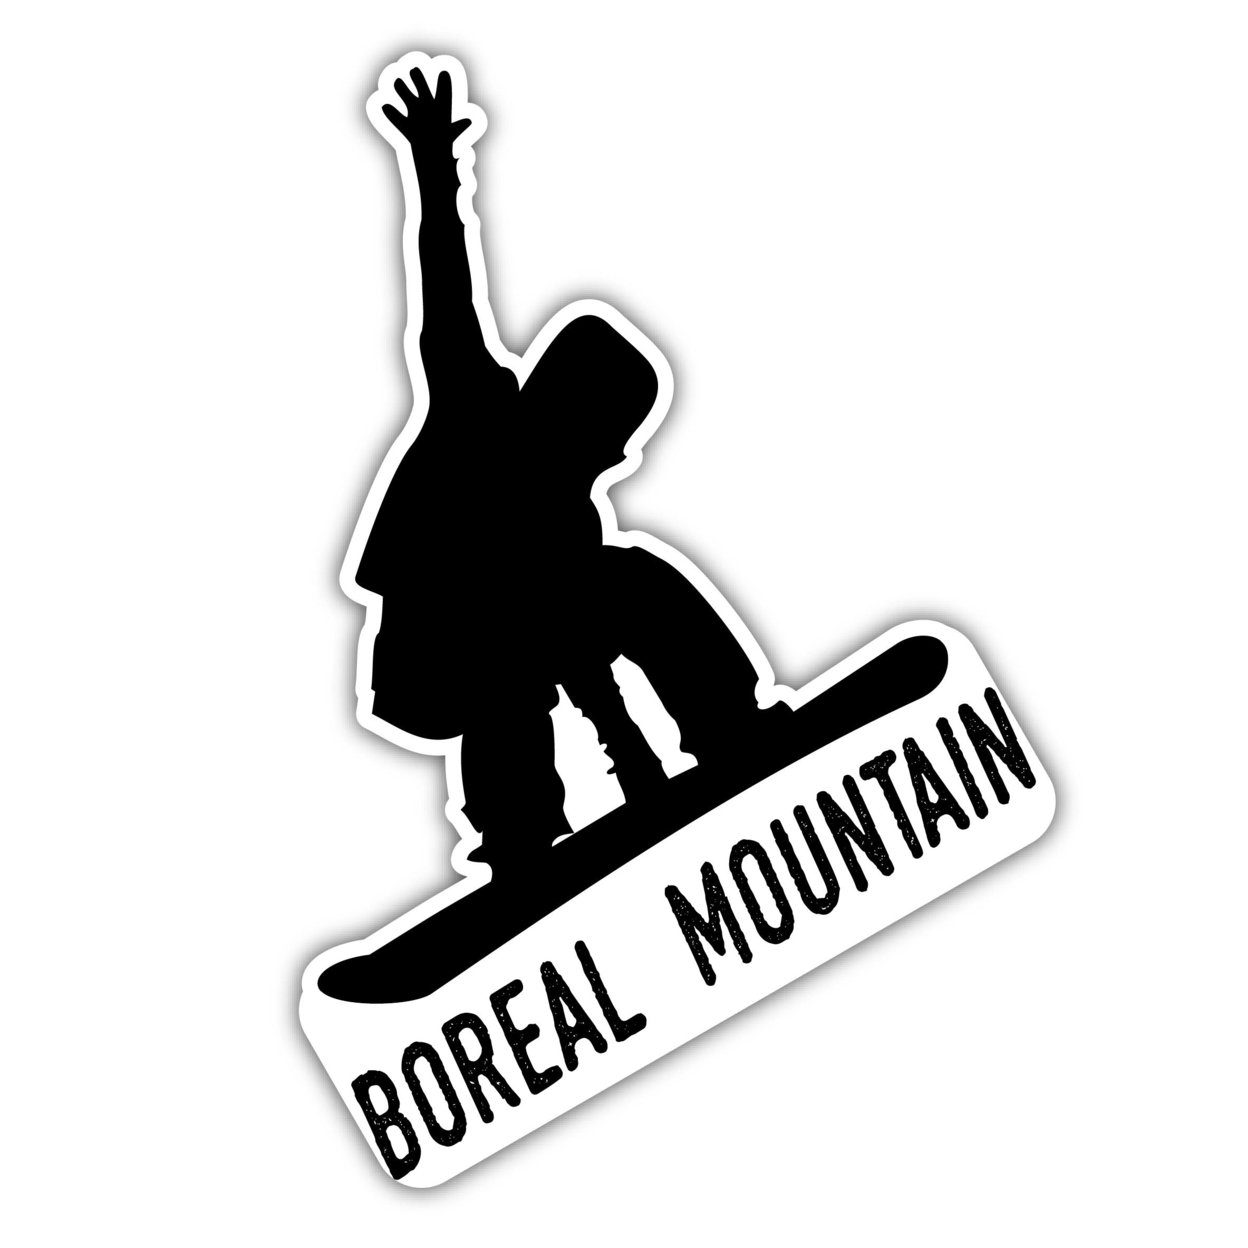 Boreal Mountain California Ski Adventures Souvenir Approximately 5 X 2.5-Inch Vinyl Decal Sticker Goggle Design